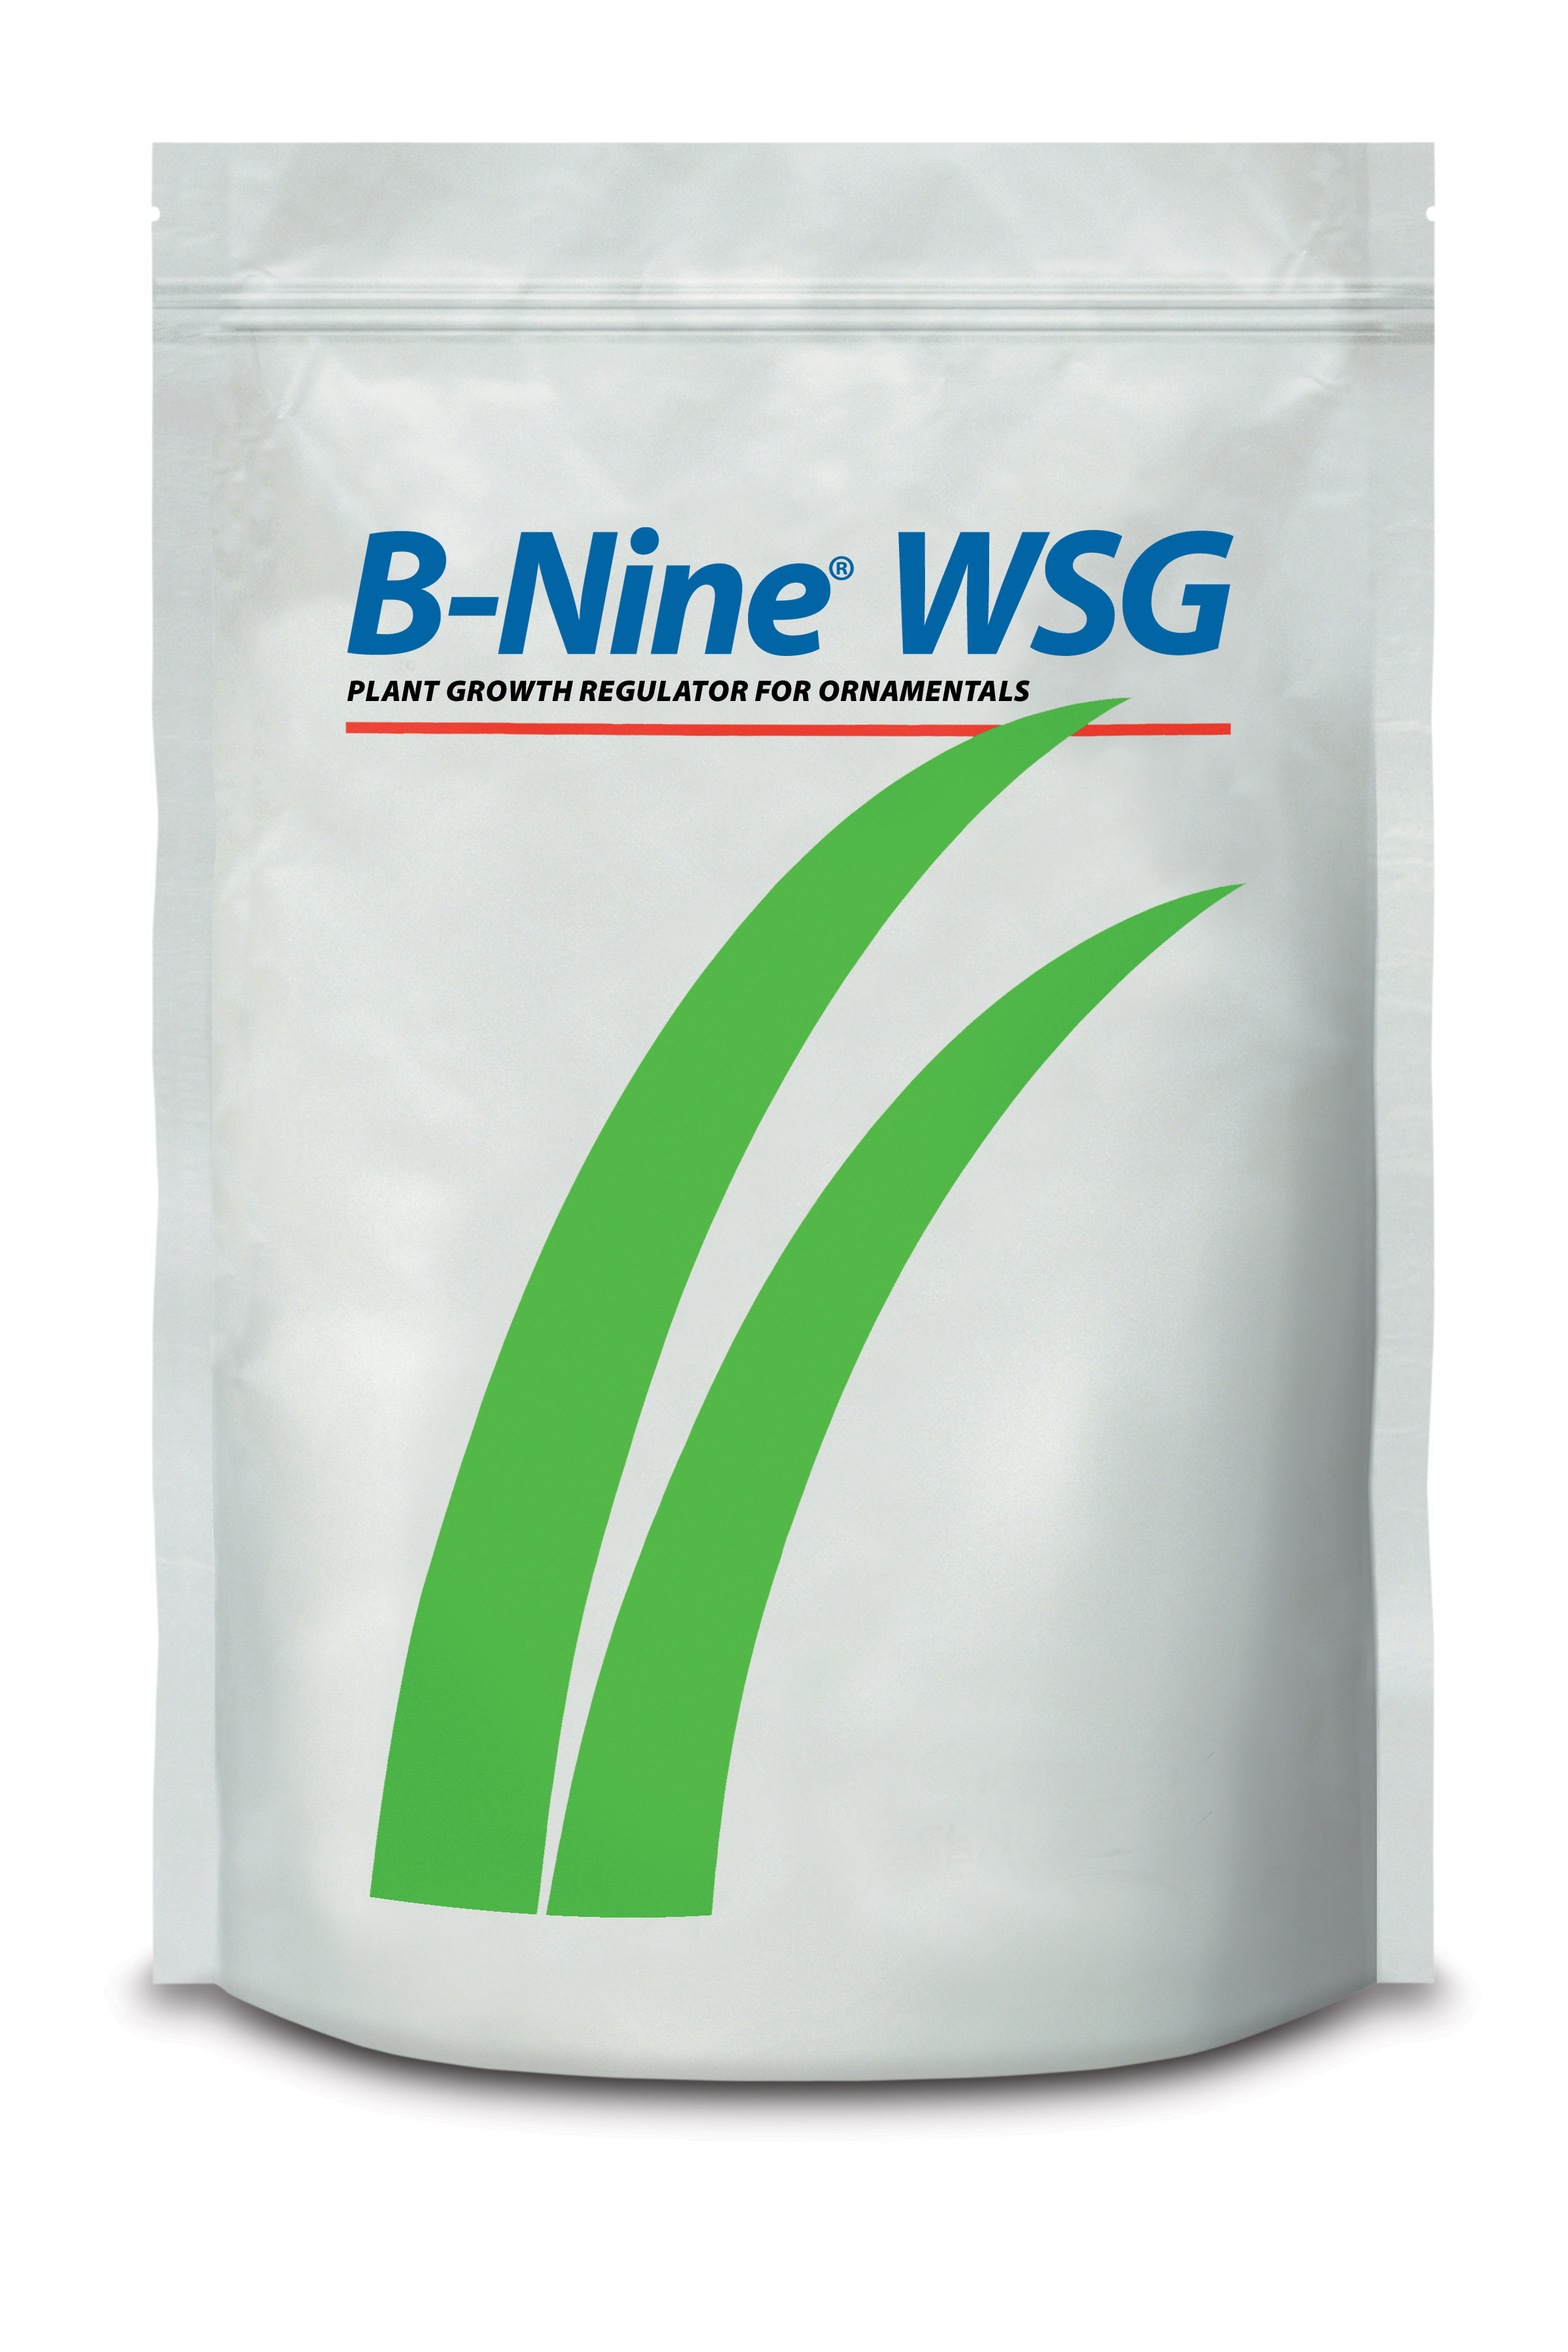 B-Nine® WSG 5 lb Bag - 8 per case - Growth Regulators